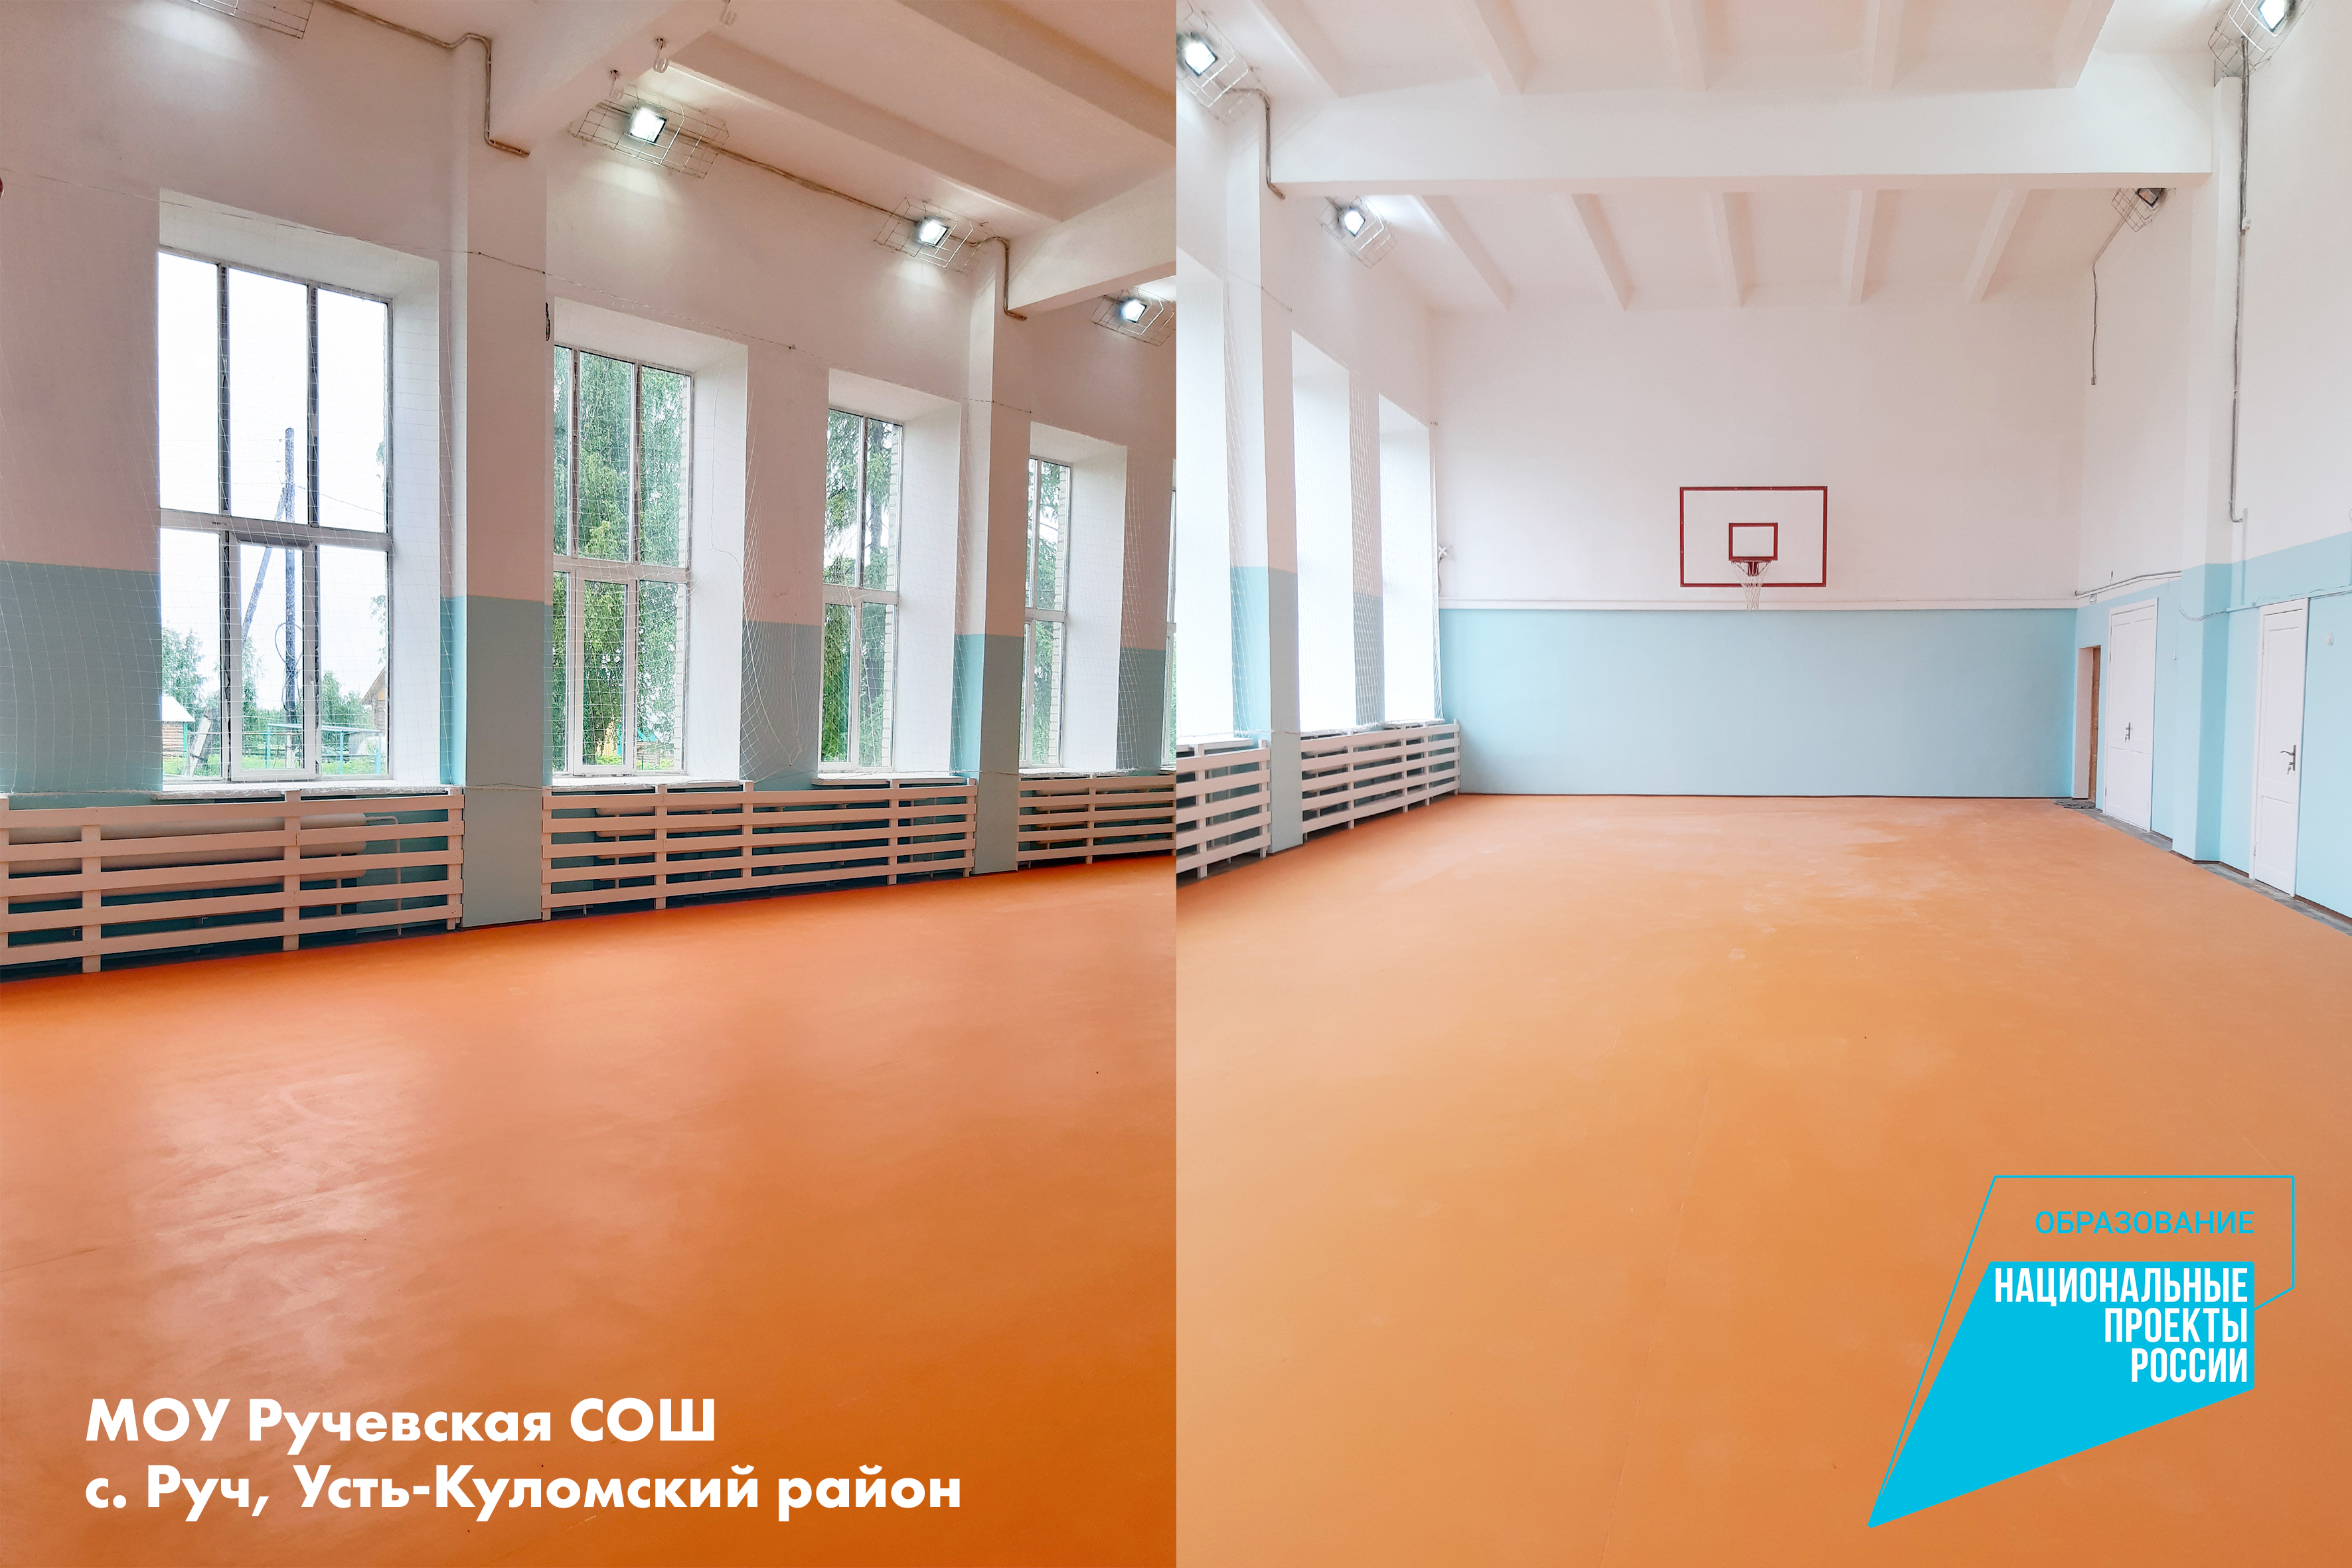 Нацпроект «Образование»: в девяти школах Коми будут отремонтированы спортзалы.